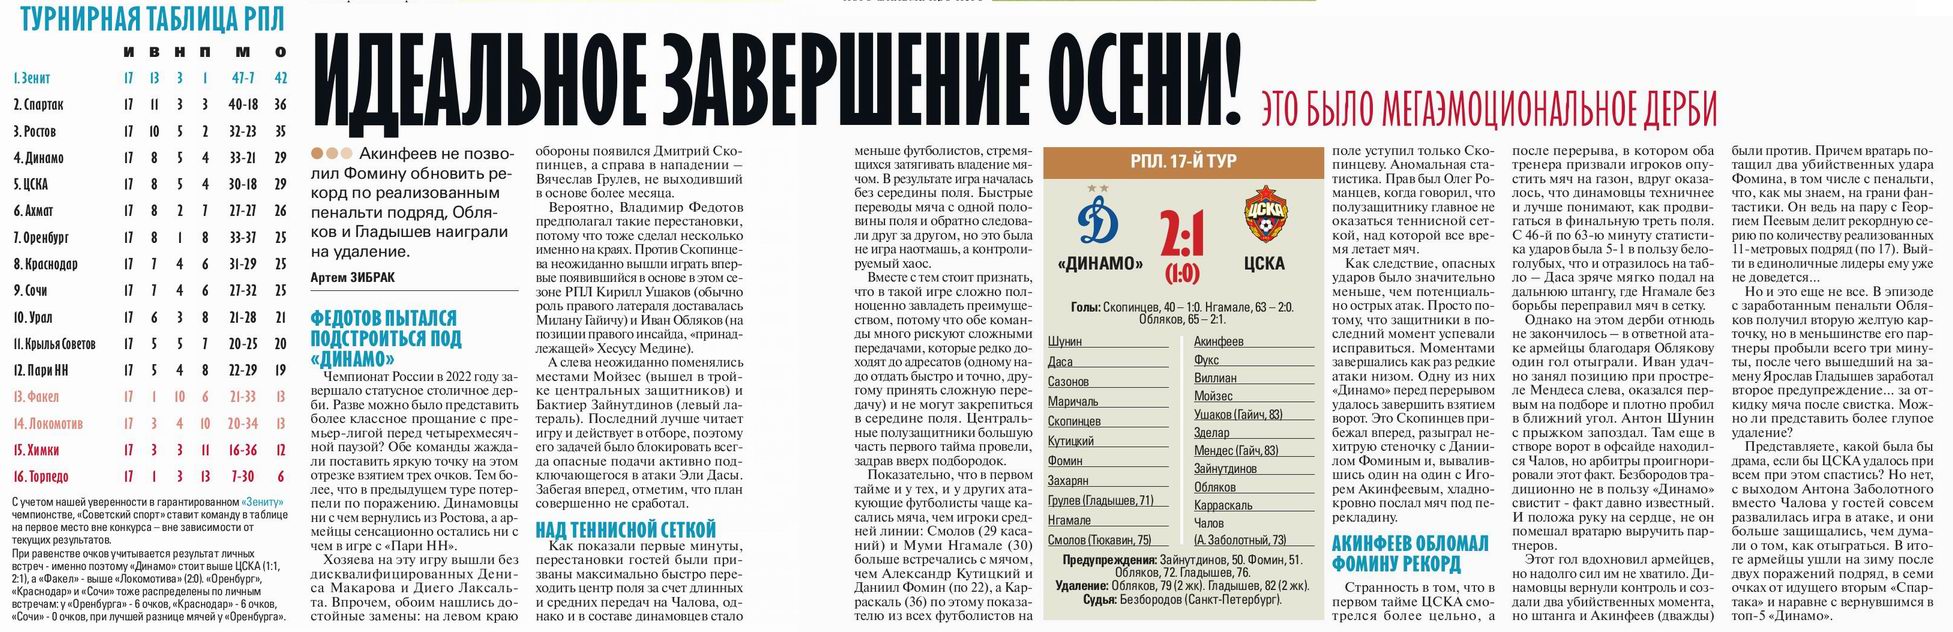 2022-11-13.DinamoM-CSKA.7